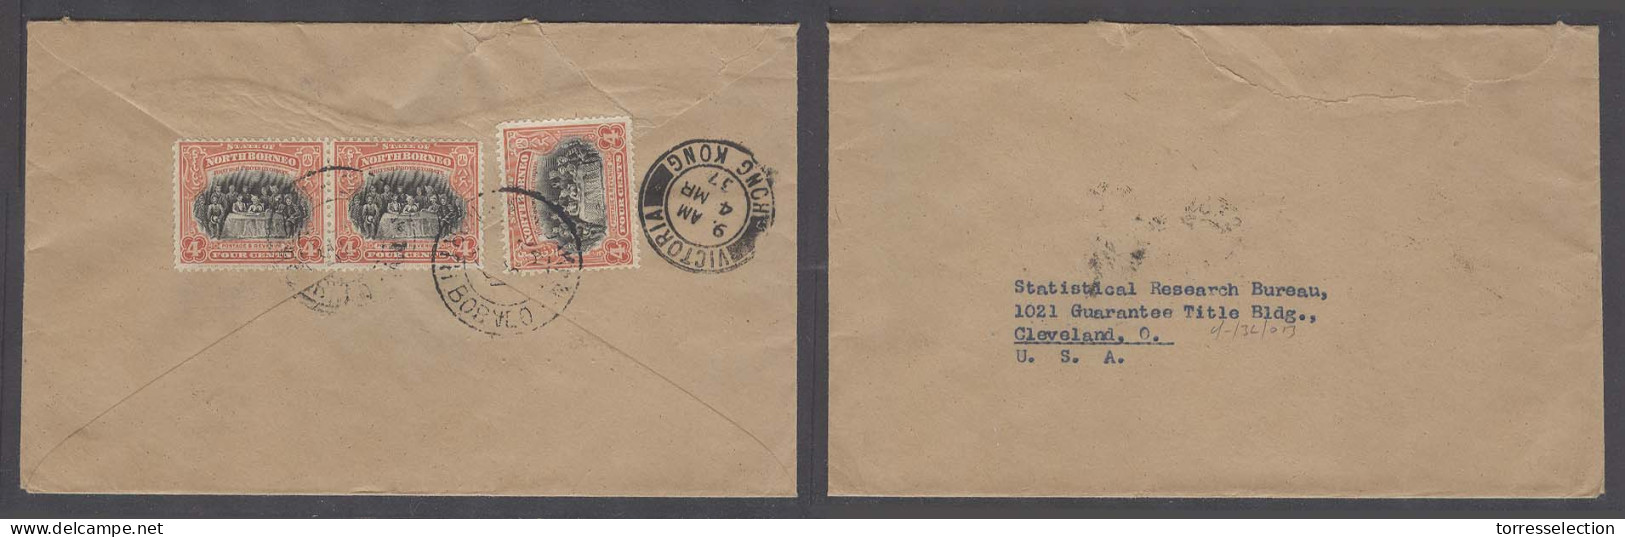 MALAYSIA. 1937 (26 Feb). North Borneo. Soakto - USA. Via Hg Kg (4 March 37). Reverse Multifkd Env. - Malaysia (1964-...)